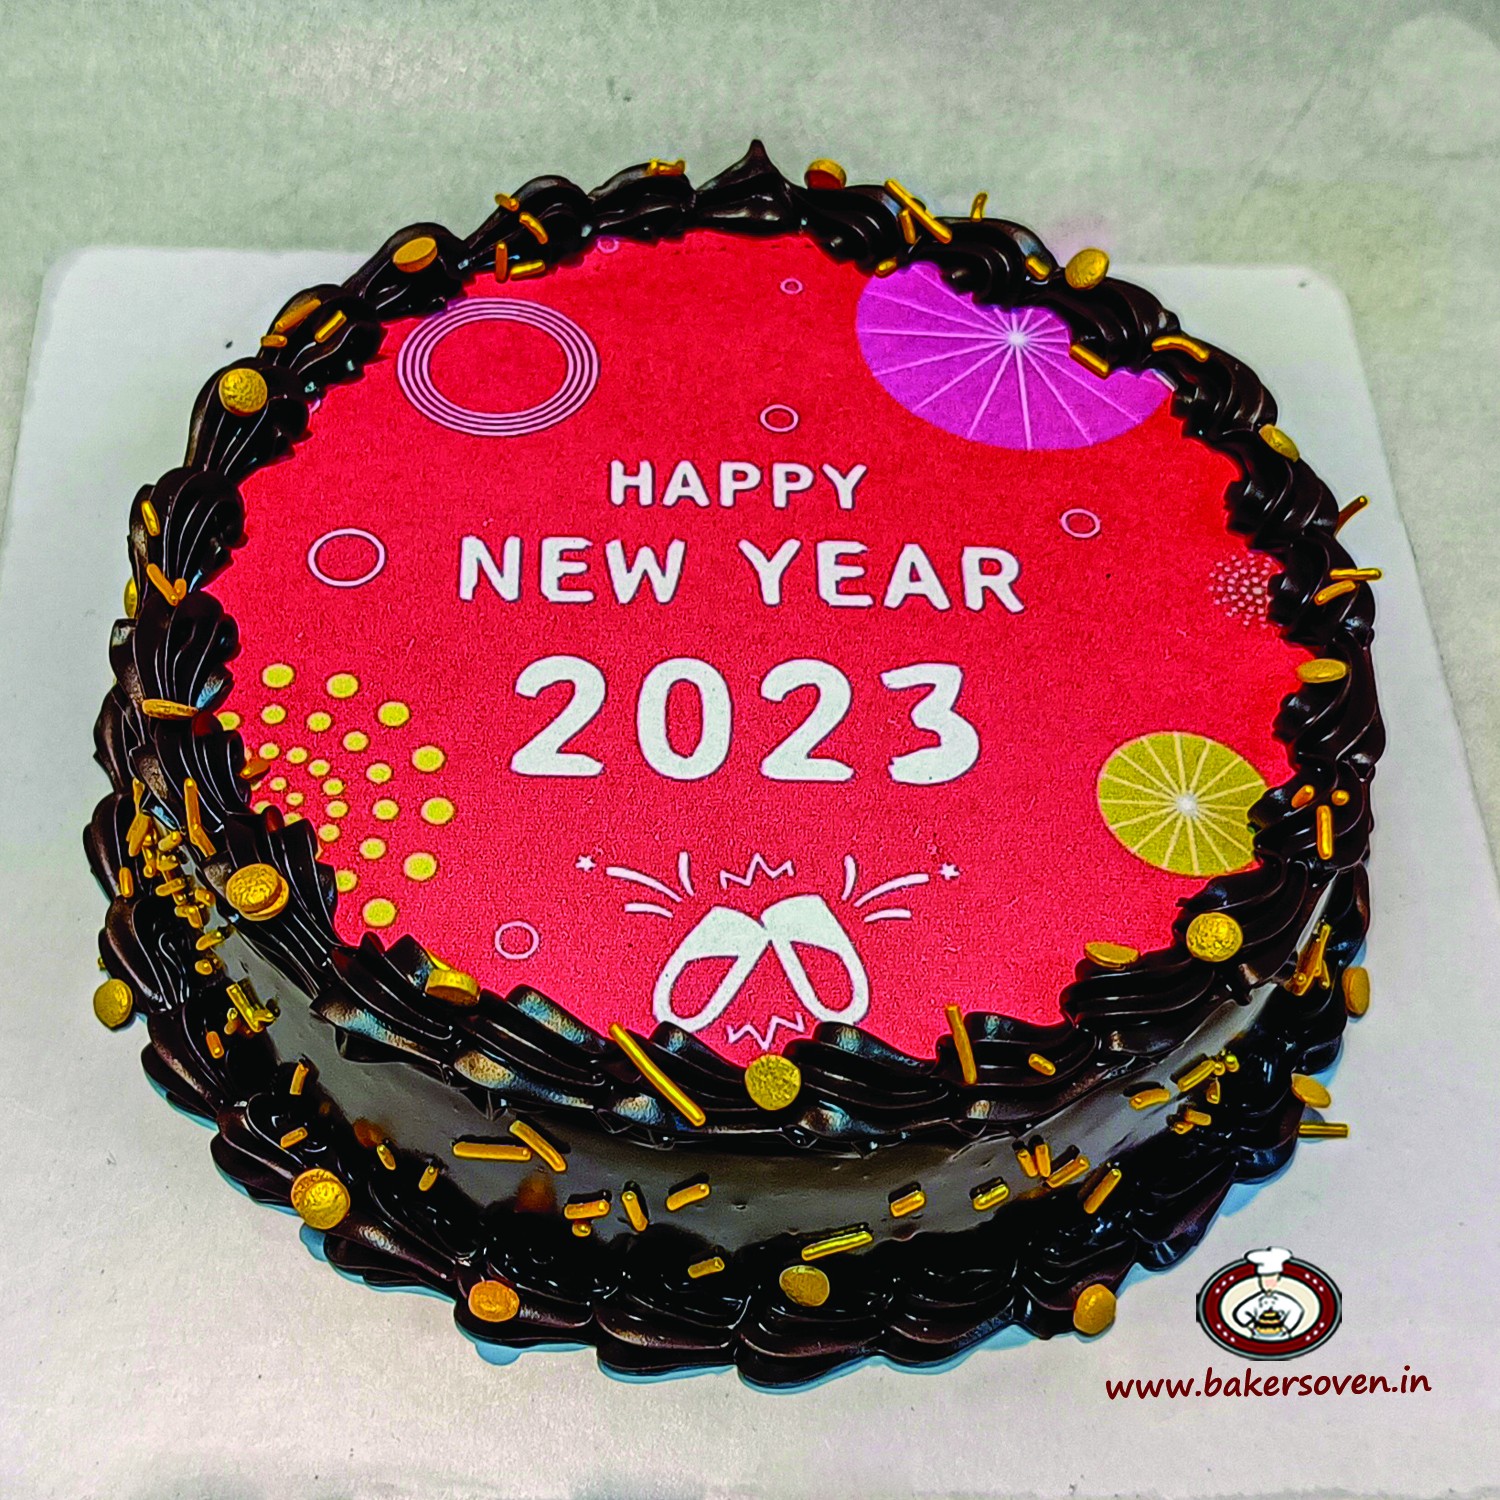 Happy New year 2022 Cake Design ideas/New year cake decoration idea -  YouTube